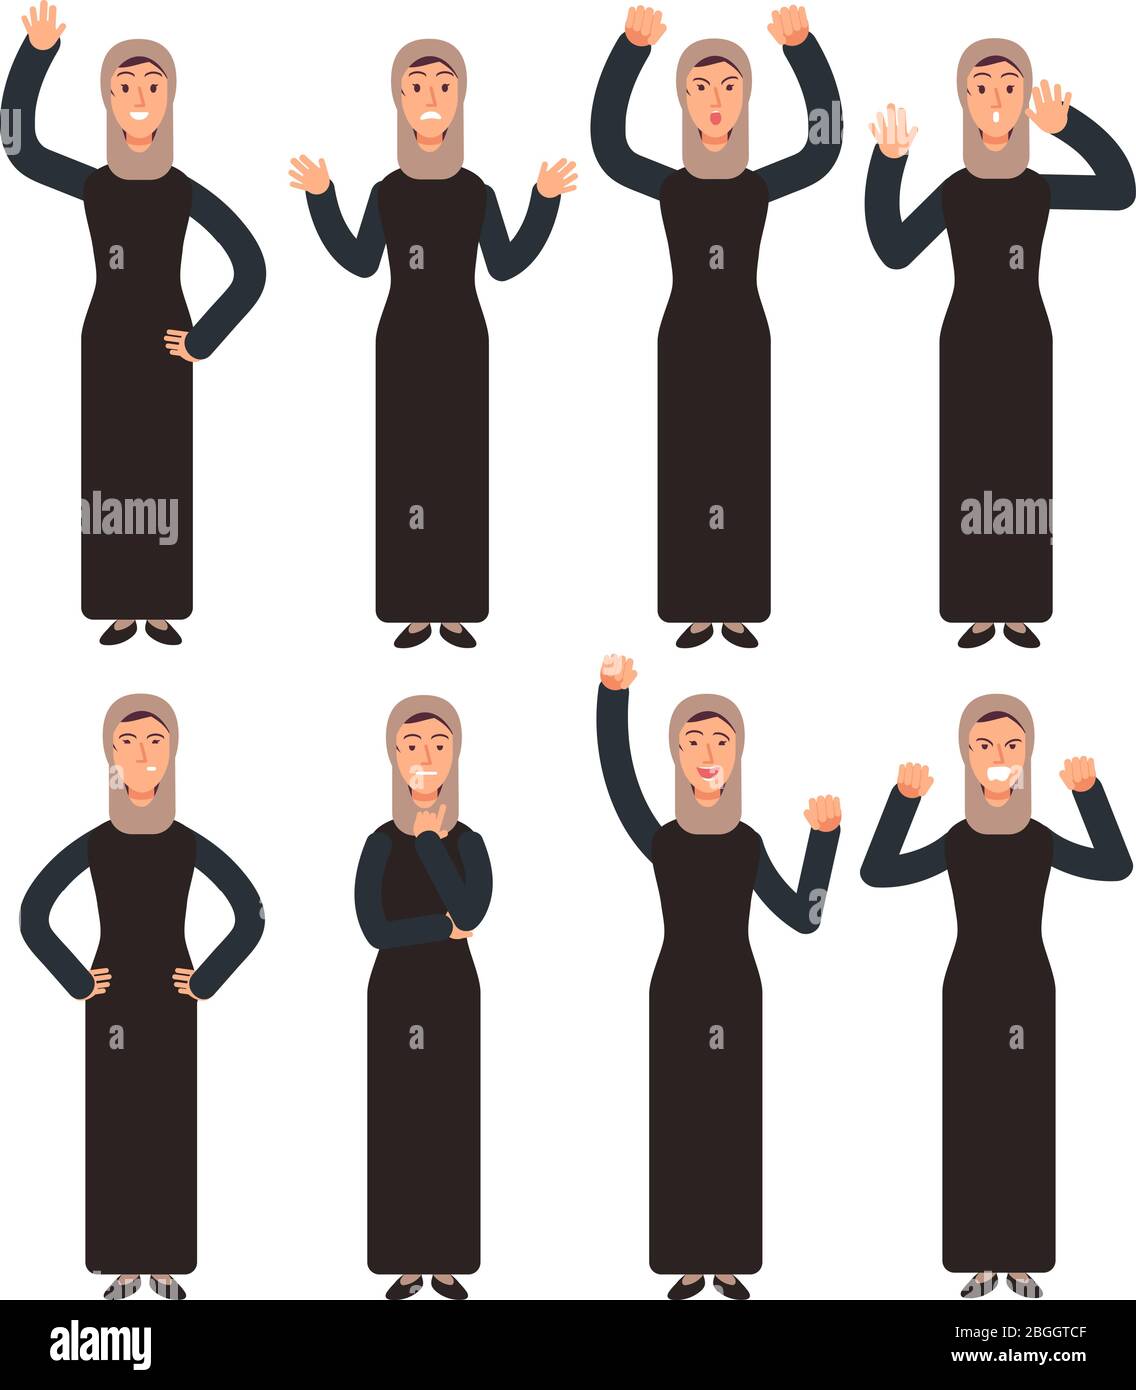 Arabische Frau mit verschiedenen Handgesten und Gesichtsemotionen stehend. Weibliche muslimische Vektorzeichen gesetzt. Illustration des Charakters muslim, arabische Frau Emotion Stock Vektor